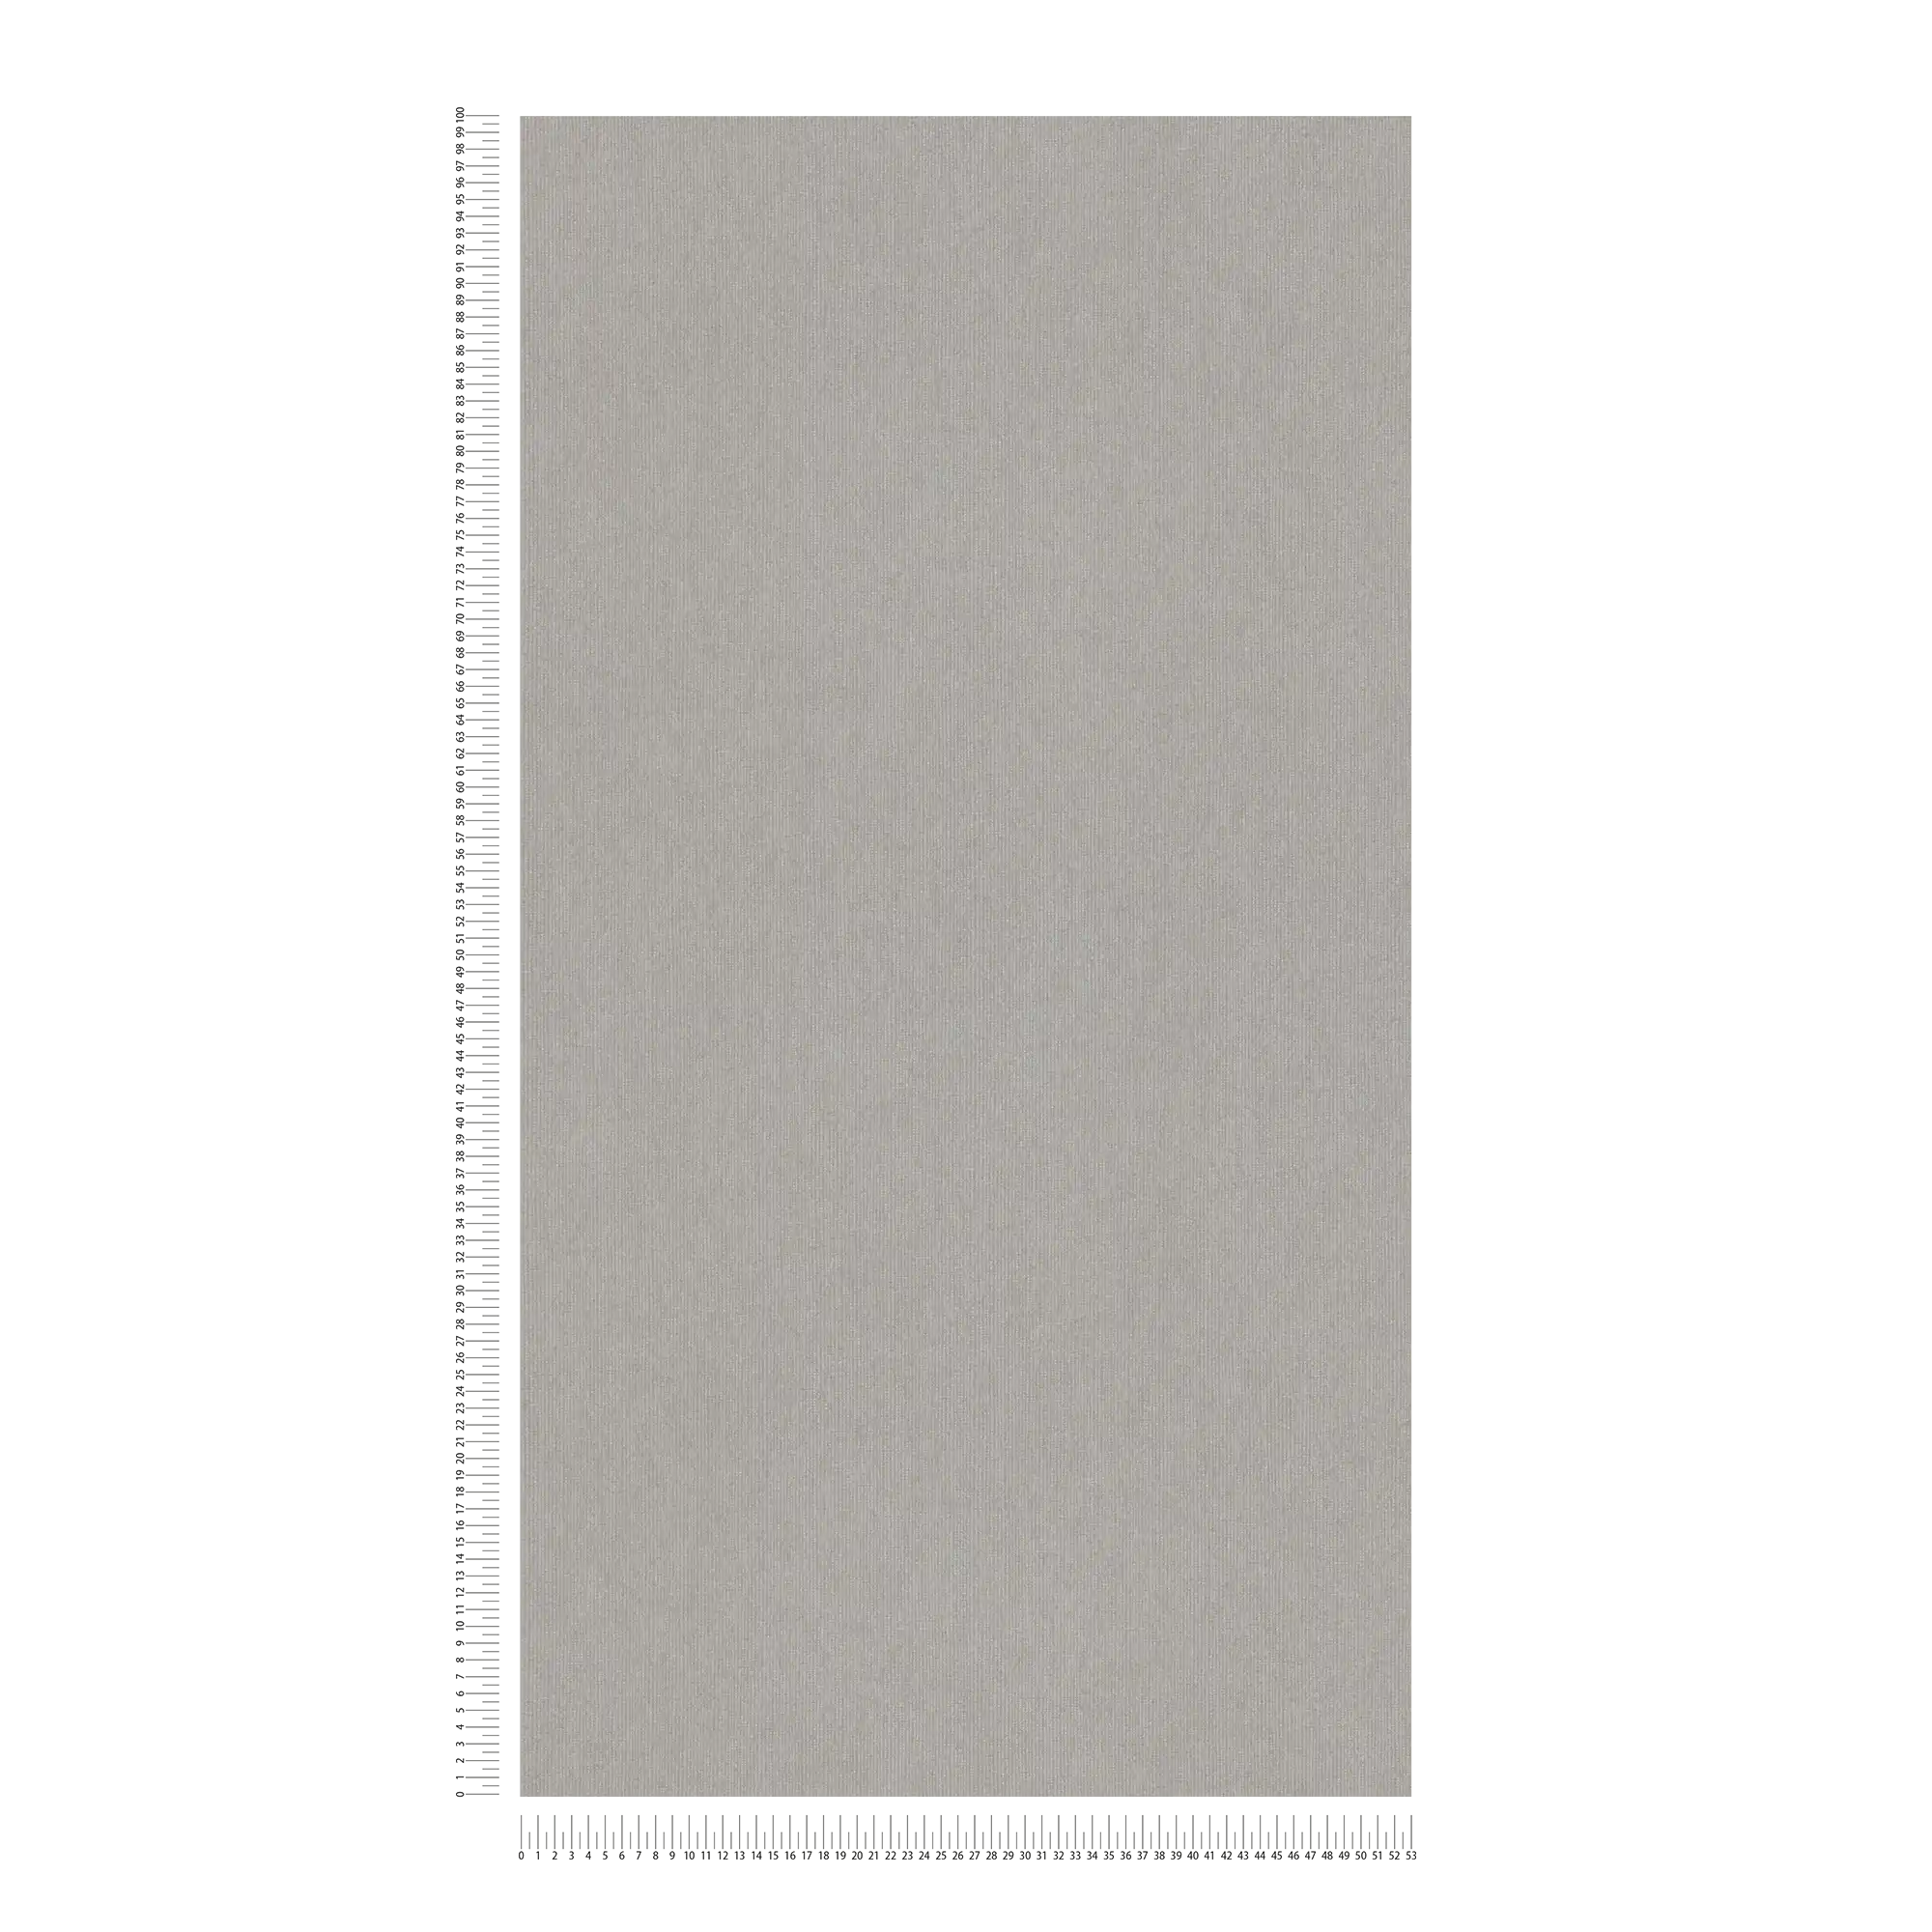             Carta da parati lucida con struttura tessile ed effetto shimmer - grigio, marrone
        